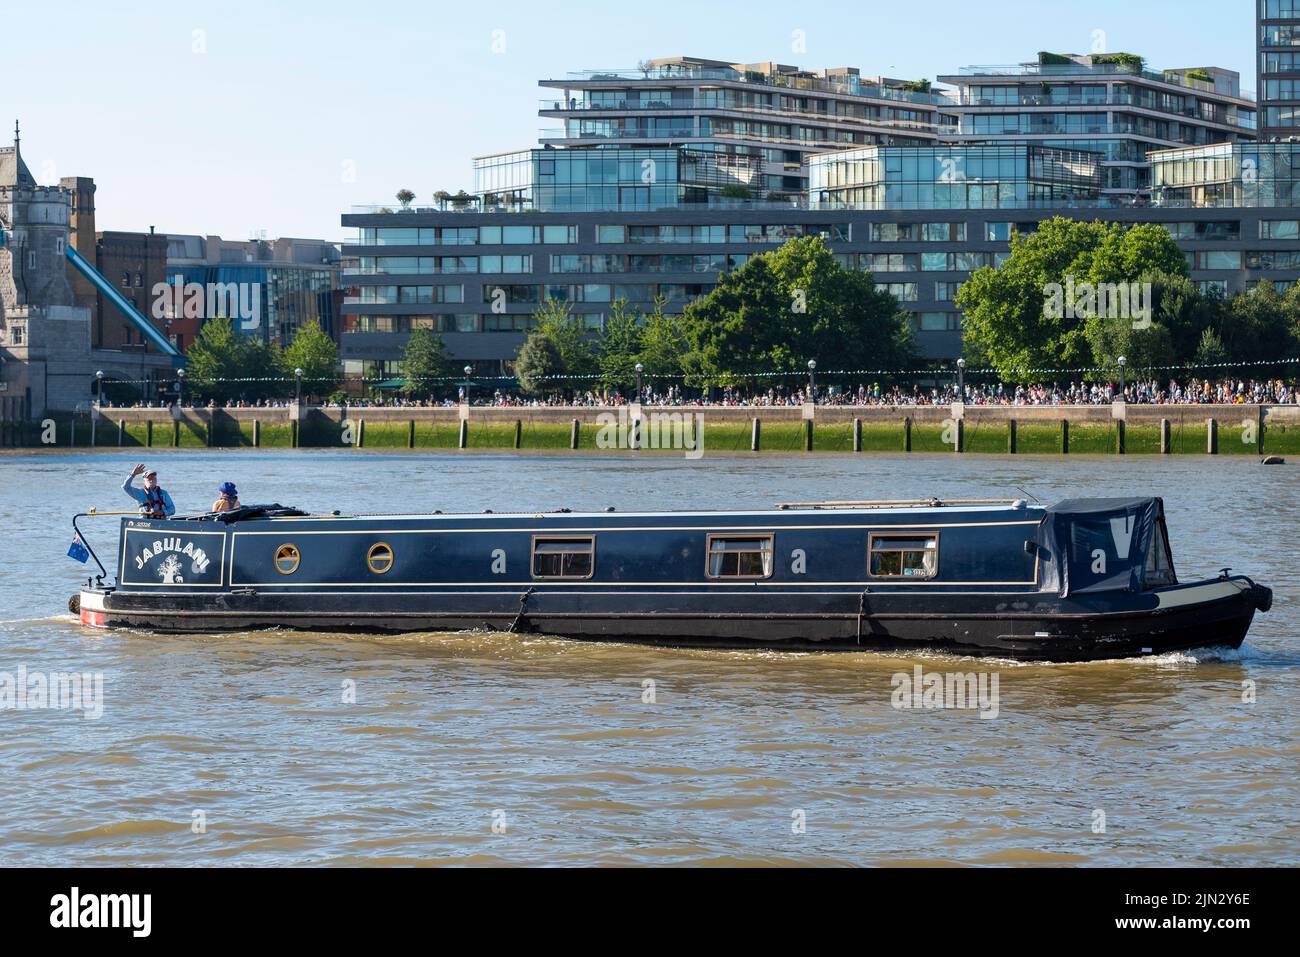 Narrow boat Jabulani passing along the River Thames, London, UK, passing South Bank and One Tower Bridge Stock Photo